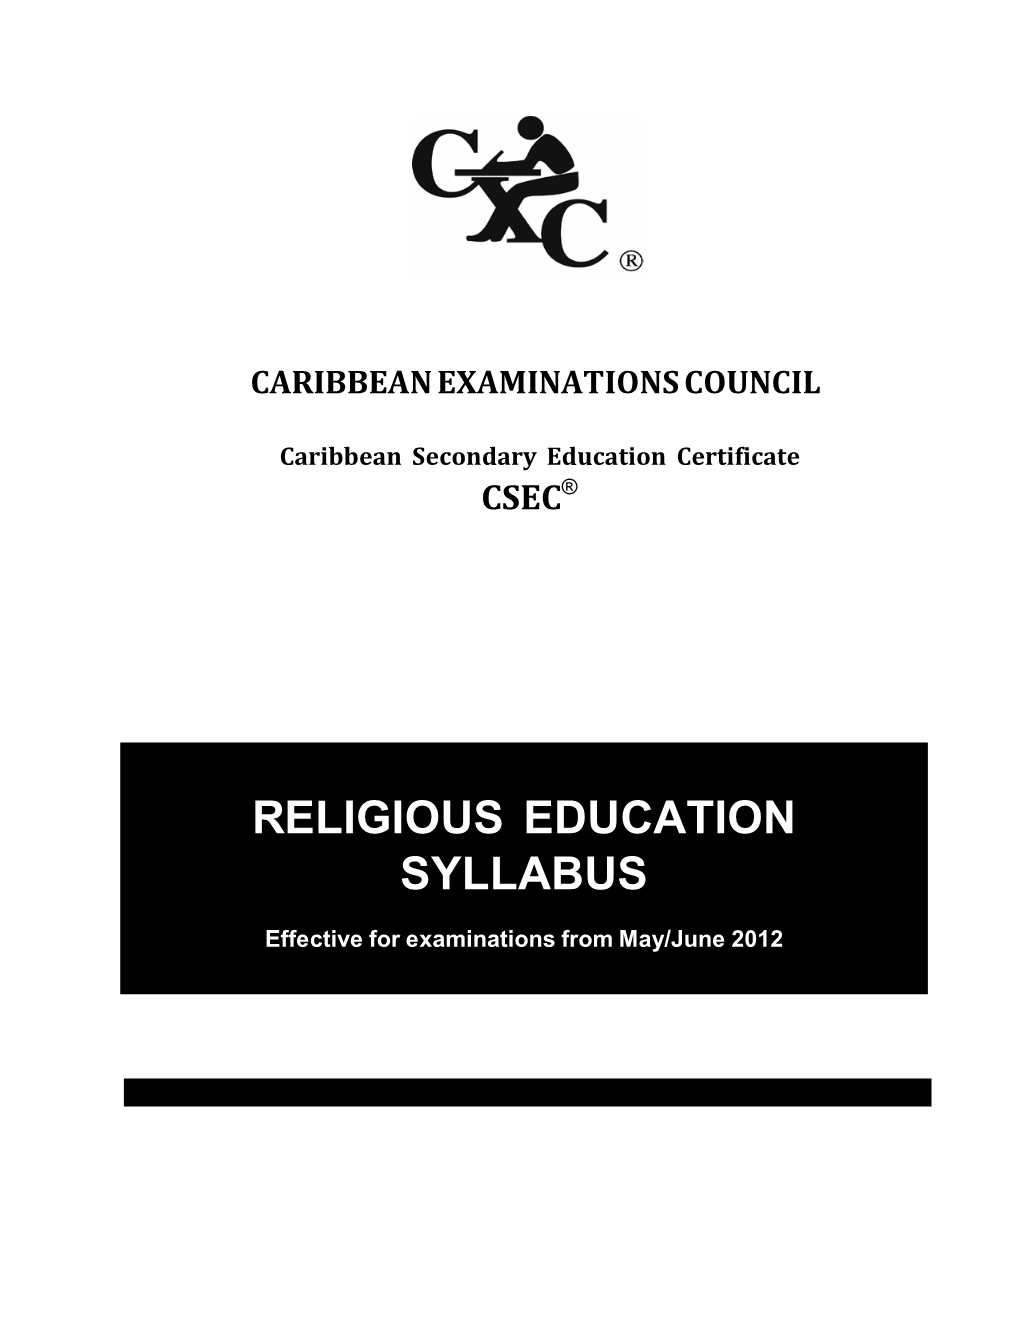 Religious Education Syllabus